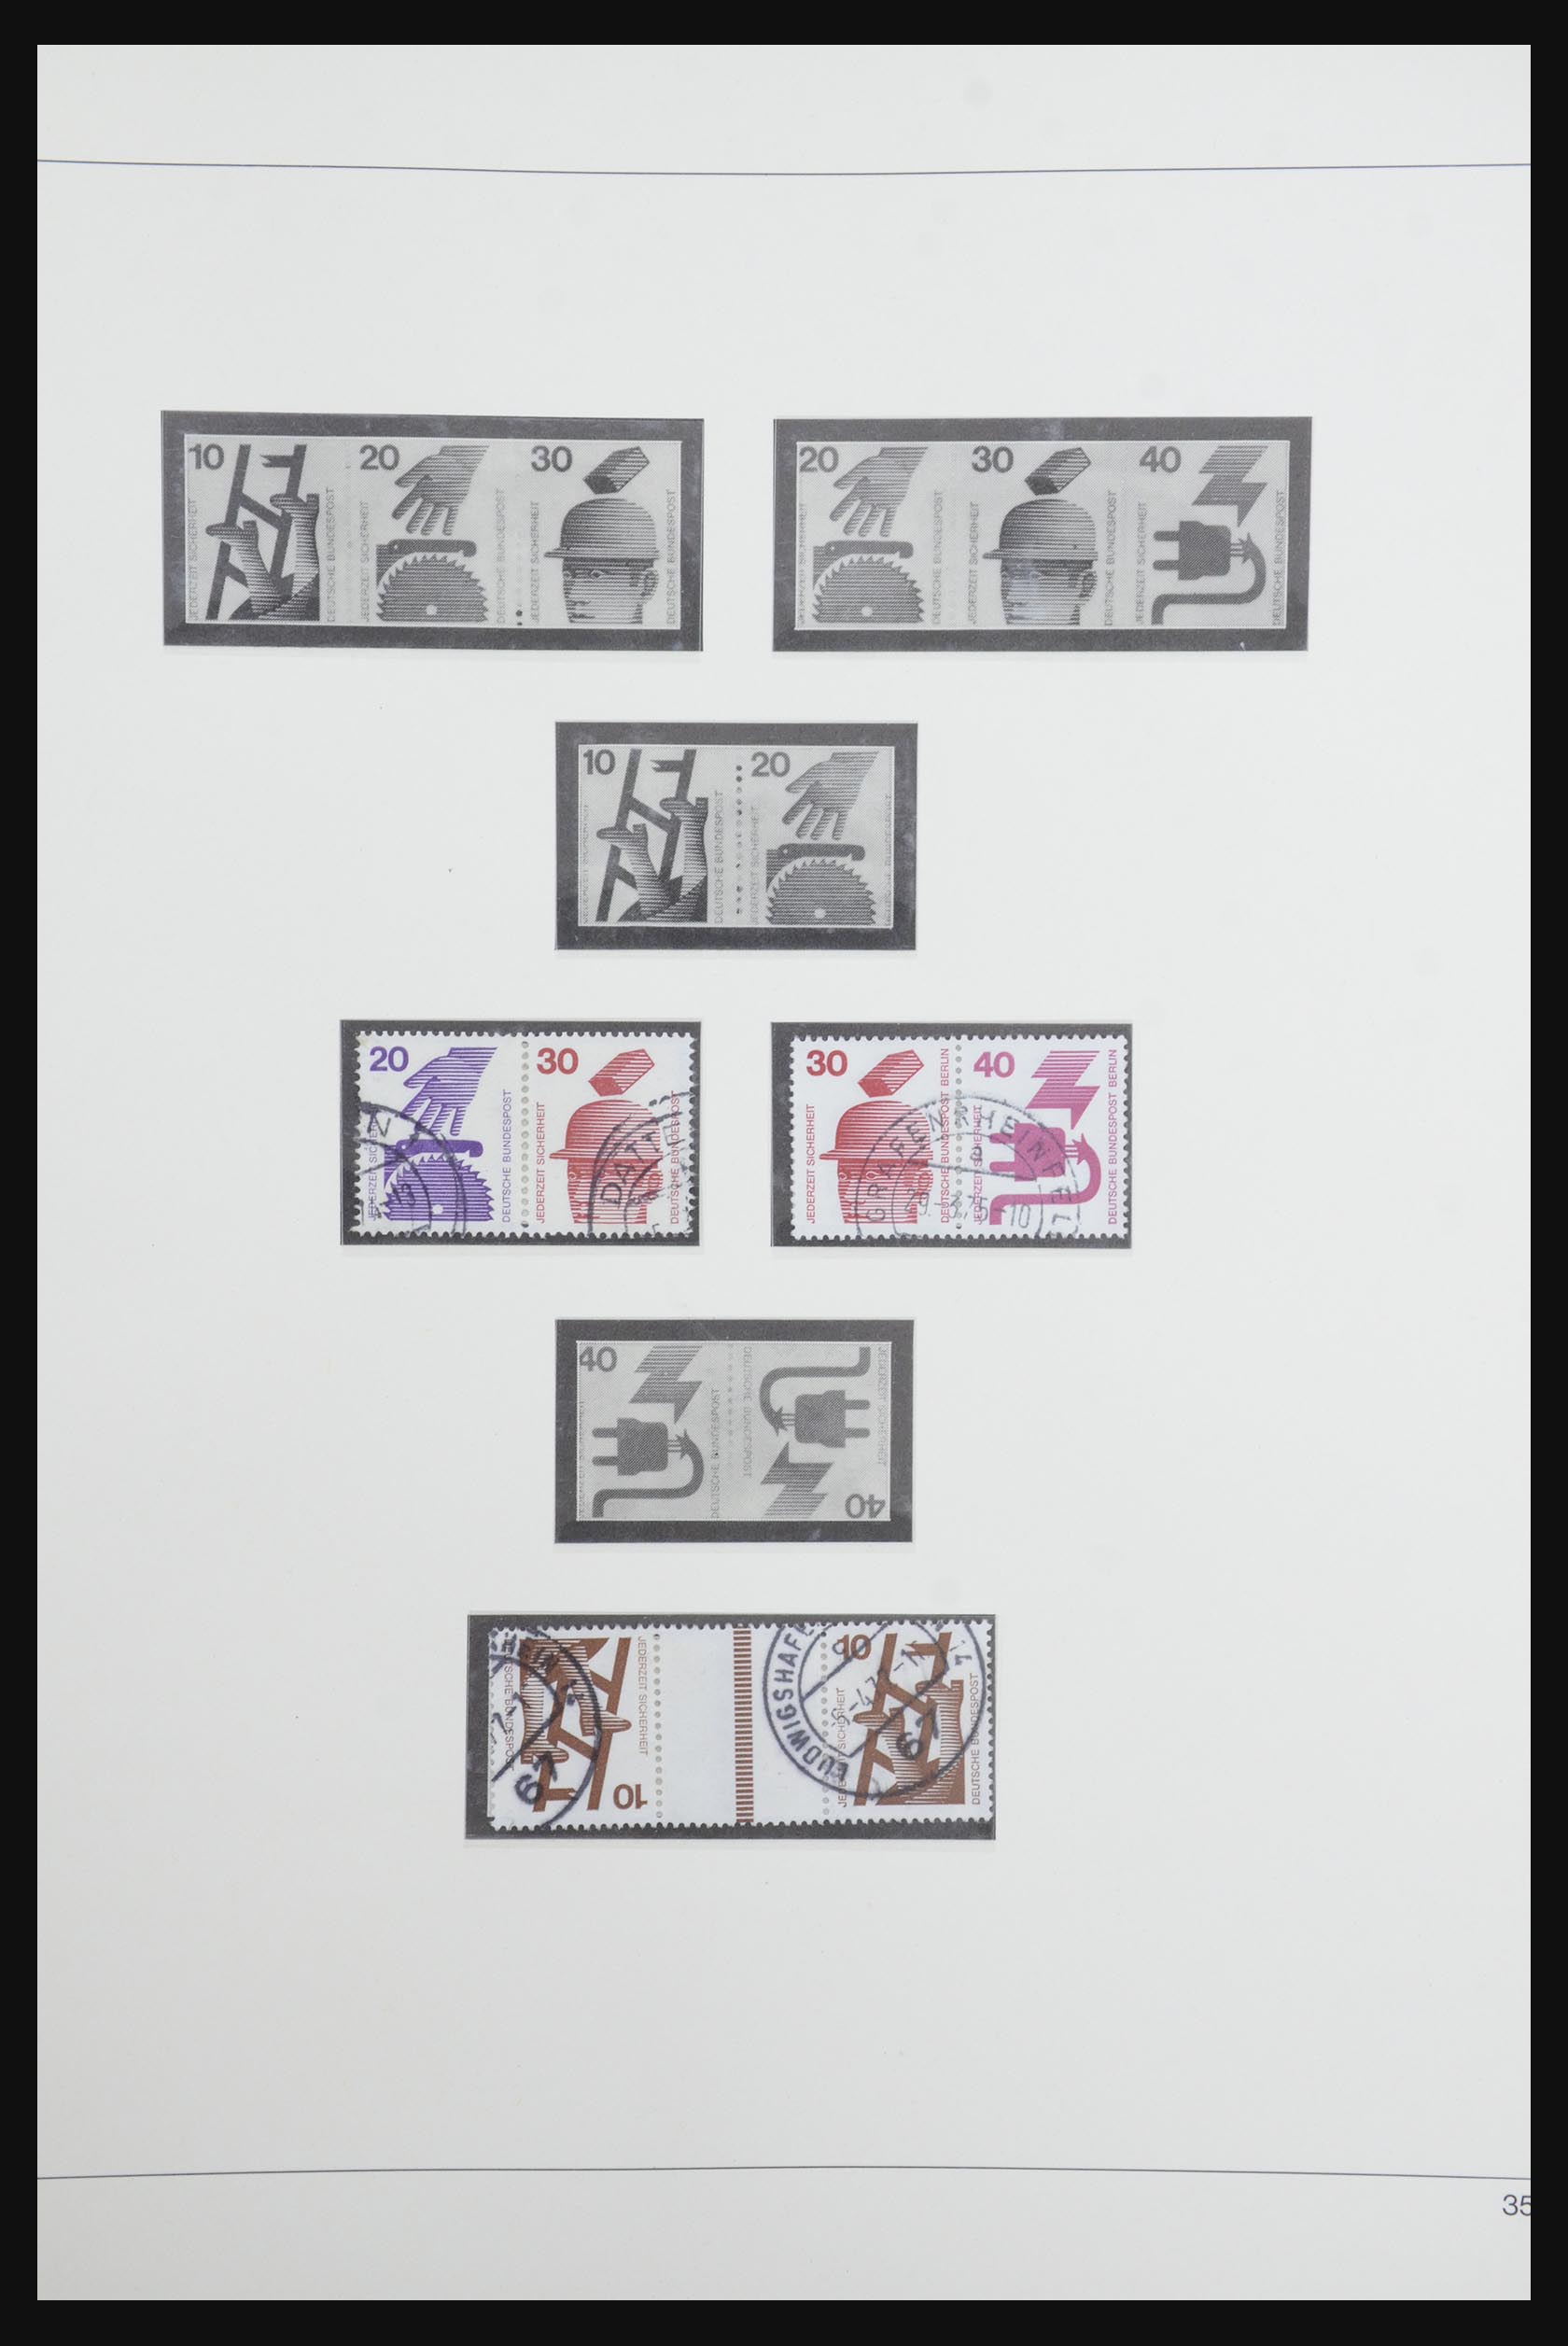 31842 050 - 31842 Bundespost combinaties 1951-2003.